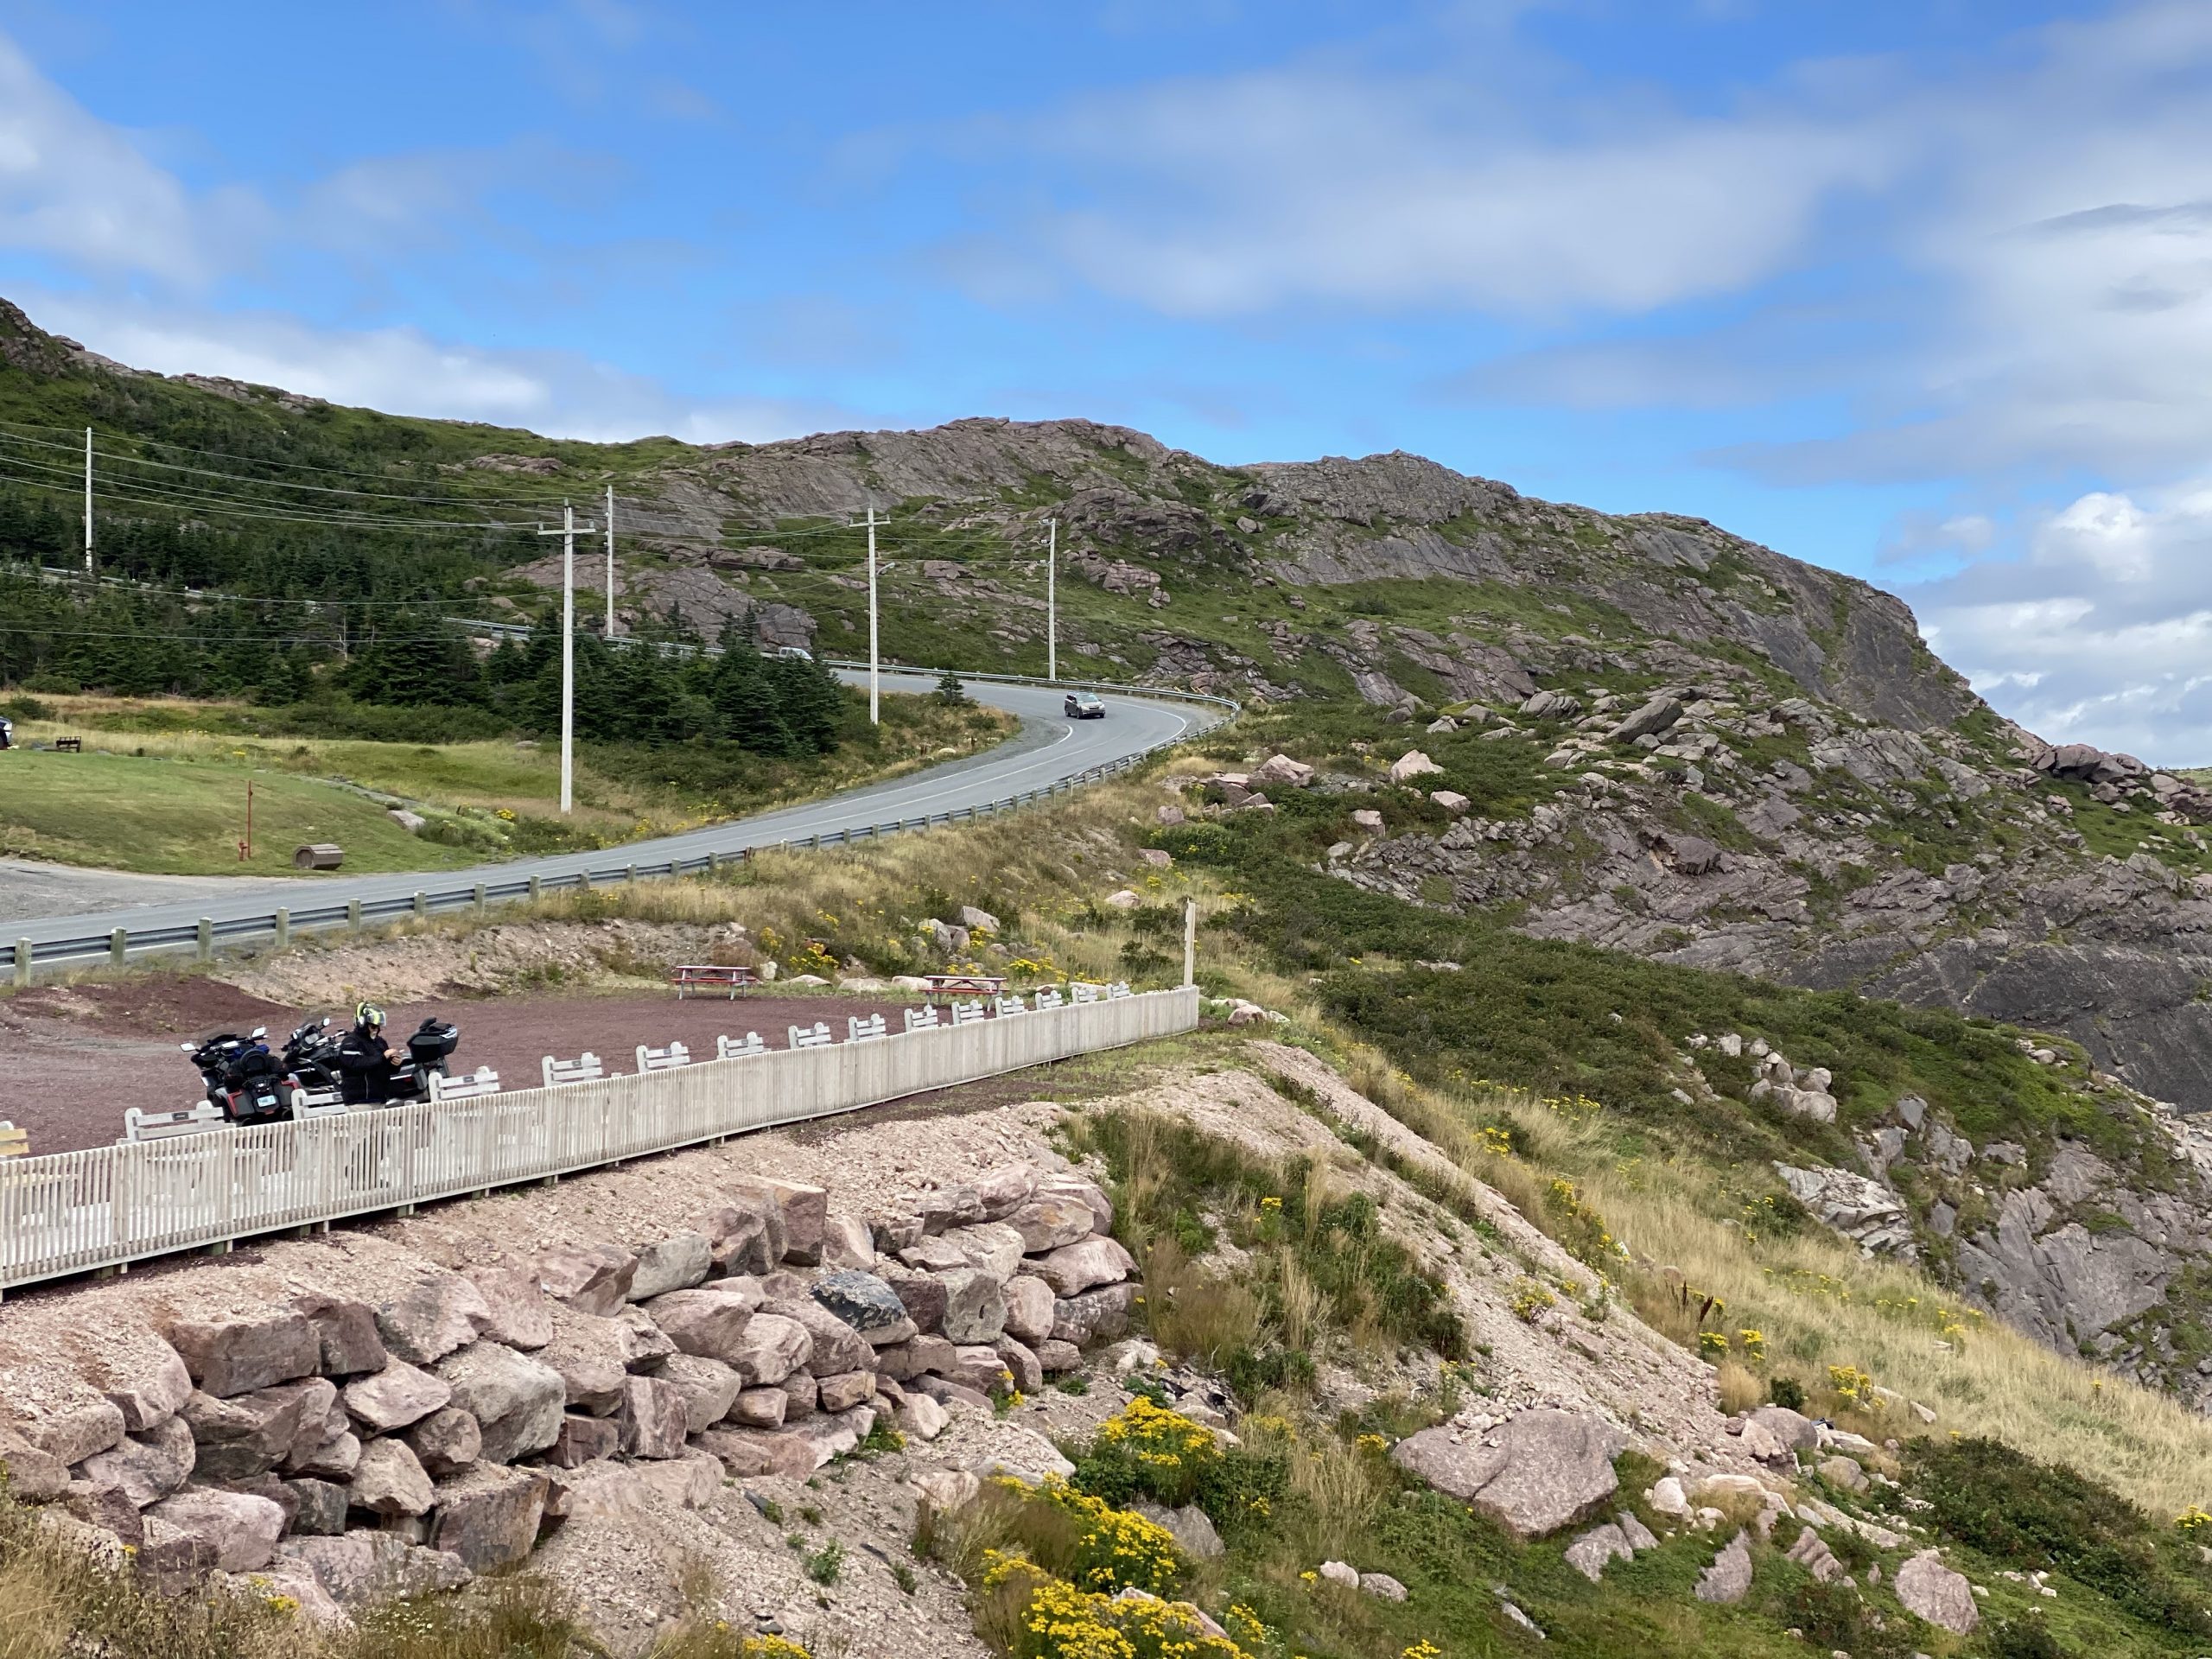 The bikes at the Bay de Verde overlook, in Newfoundland.